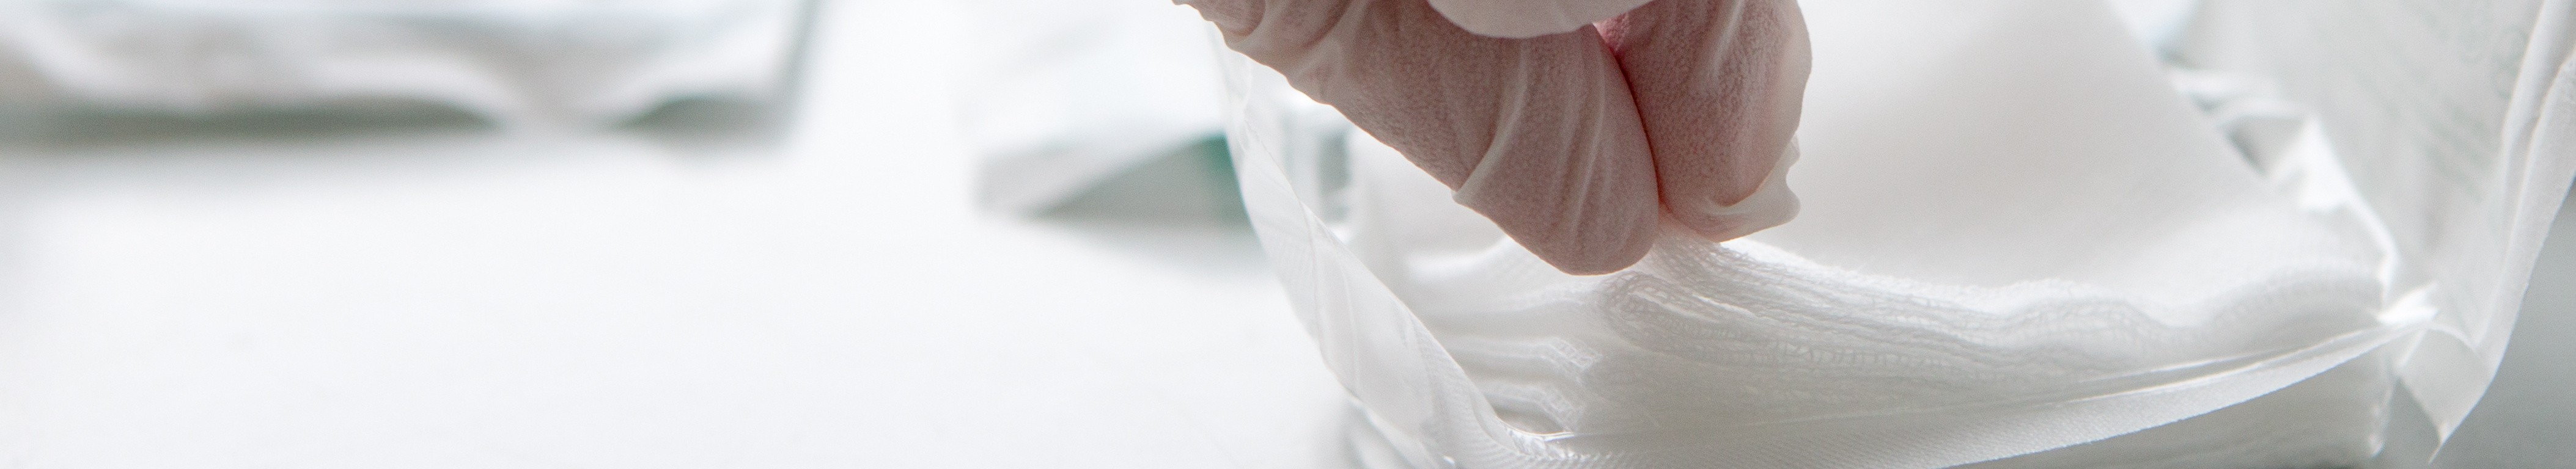 Sterile Kompresse wird mit Handschuh aus der Verpackung entnommen